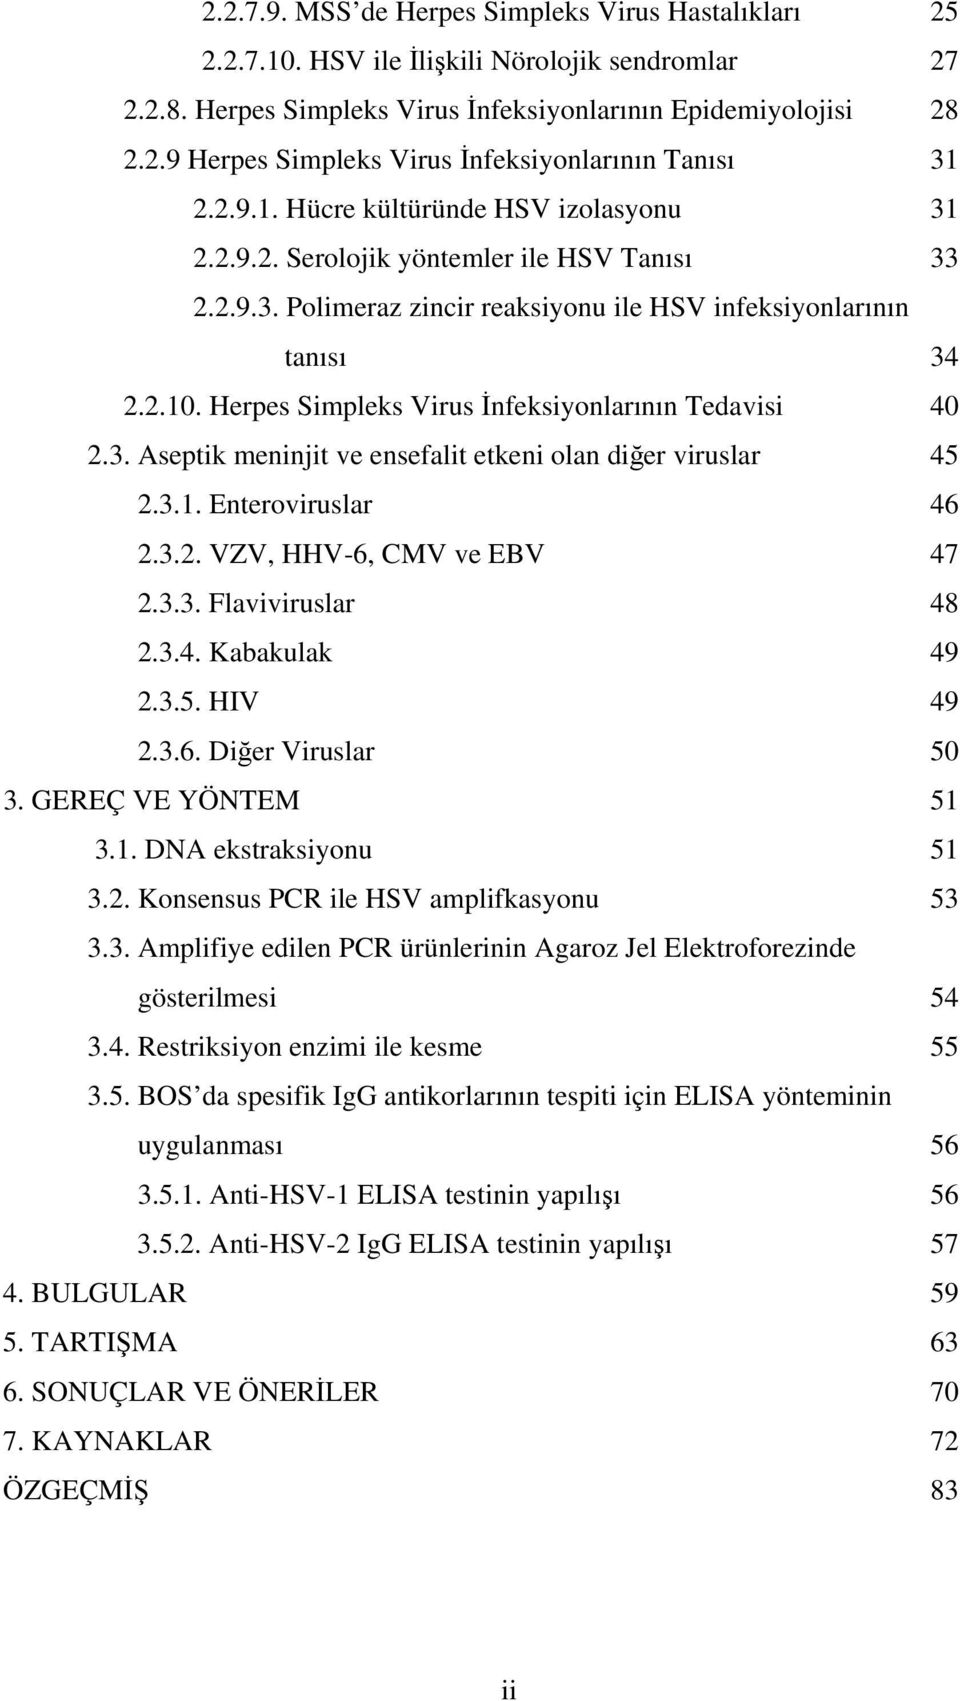 Herpes Simpleks Virus İnfeksiyonlarının Tedavisi 40 2.3. Aseptik meninjit ve ensefalit etkeni olan diğer viruslar 45 2.3.1. Enteroviruslar 46 2.3.2. VZV, HHV-6, CMV ve EBV 47 2.3.3. Flaviviruslar 48 2.